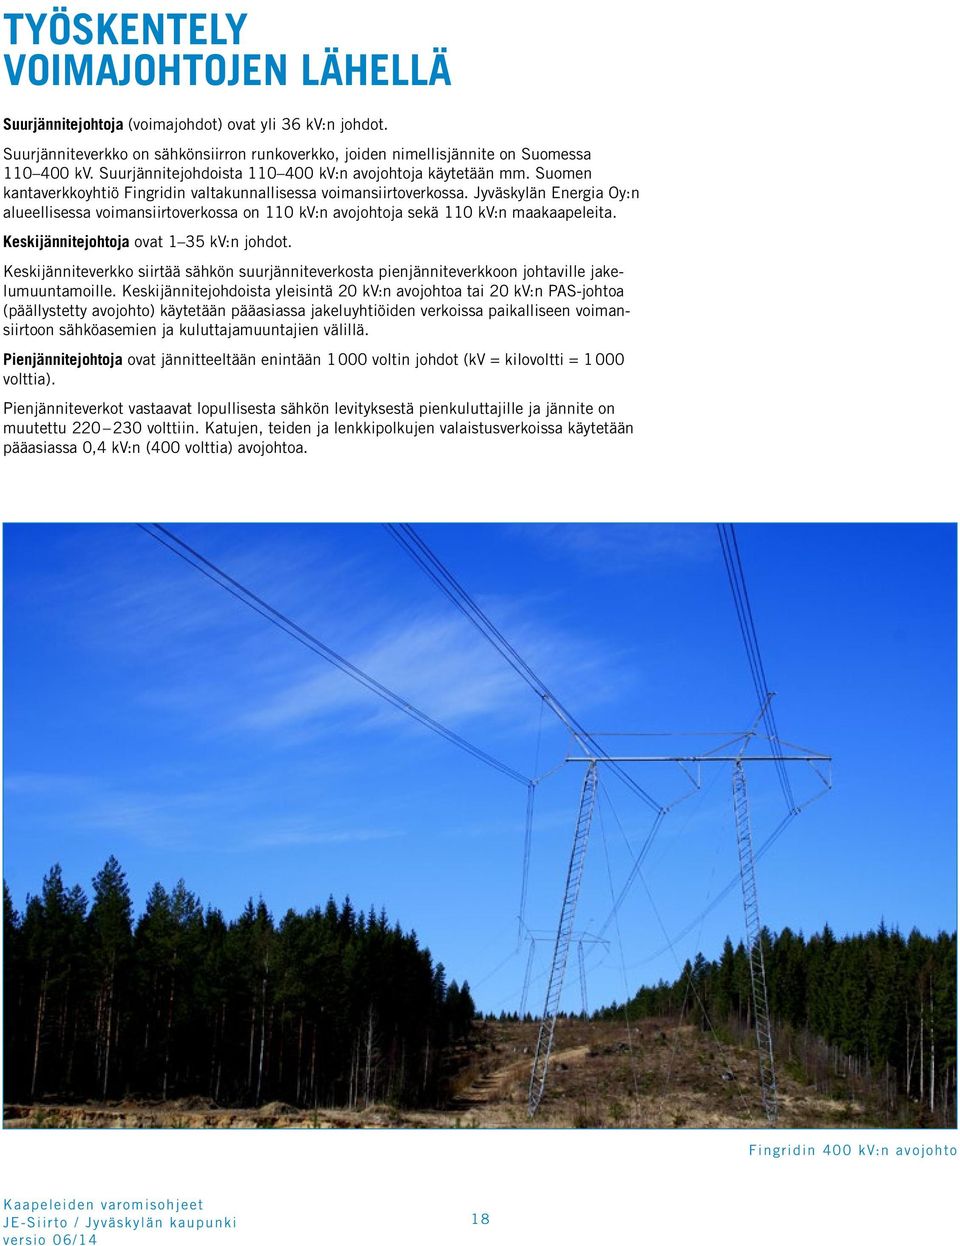 Jyväskylän Energia Oy:n alueellisessa voimansiirtoverkossa on 110 kv:n avojohtoja sekä 110 kv:n maakaapeleita. Keskijännitejohtoja ovat 1 35 kv:n johdot.